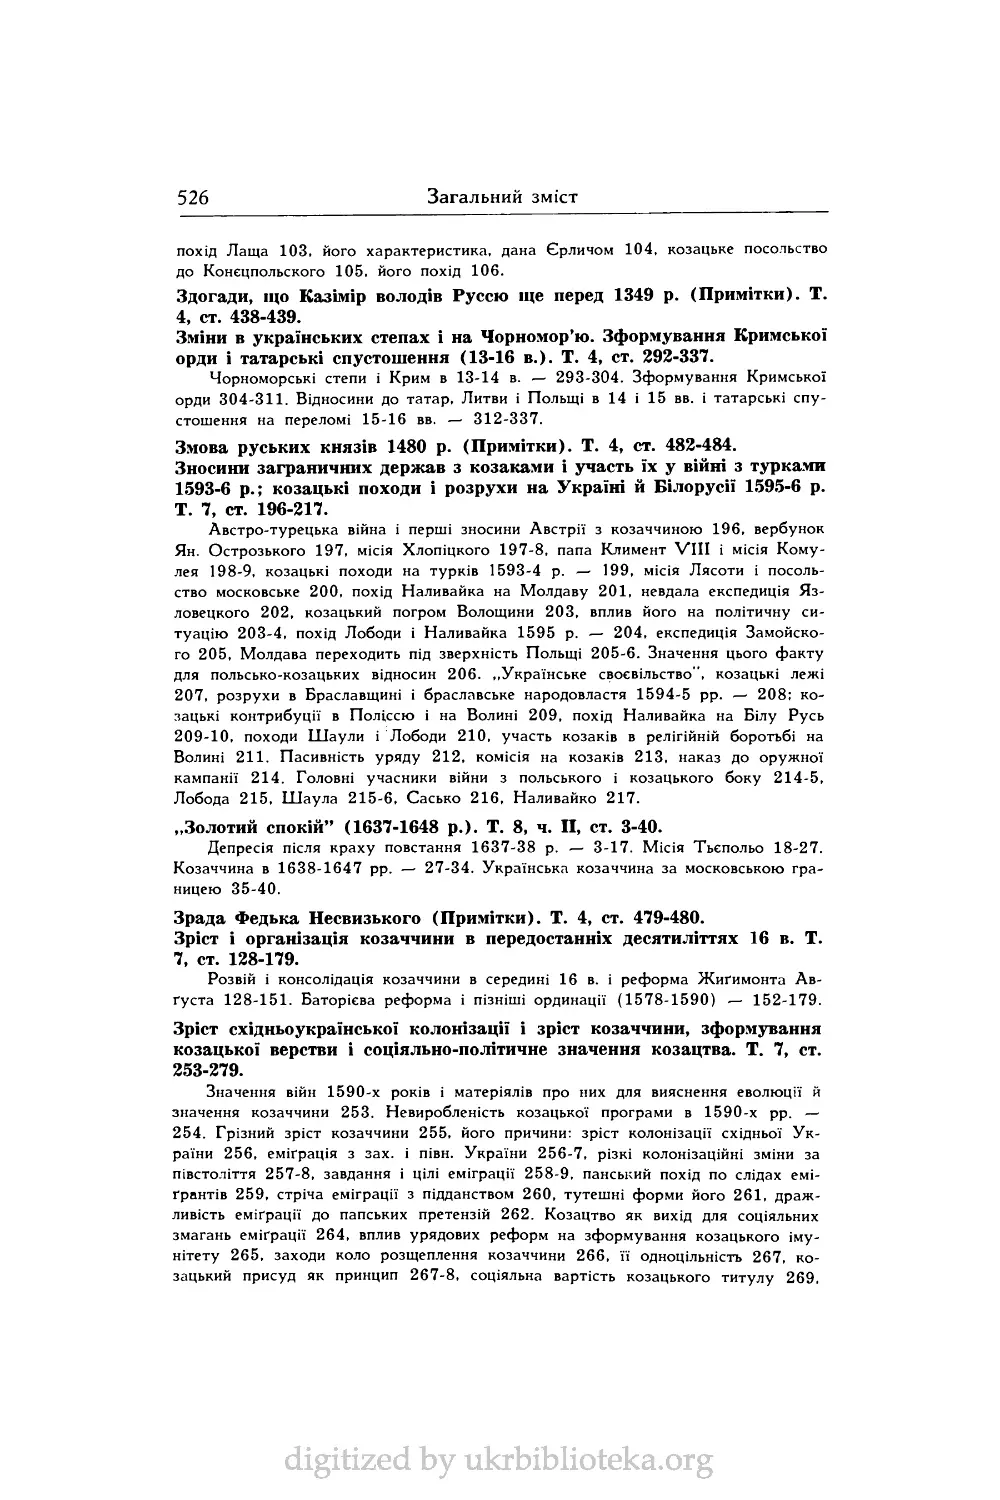 Зріст східноукраїнської колонізації і зріст козаччини, зформування козацької верстви і соціяльно-політичне значення козацтва. Т. 7, ст. 253-279.